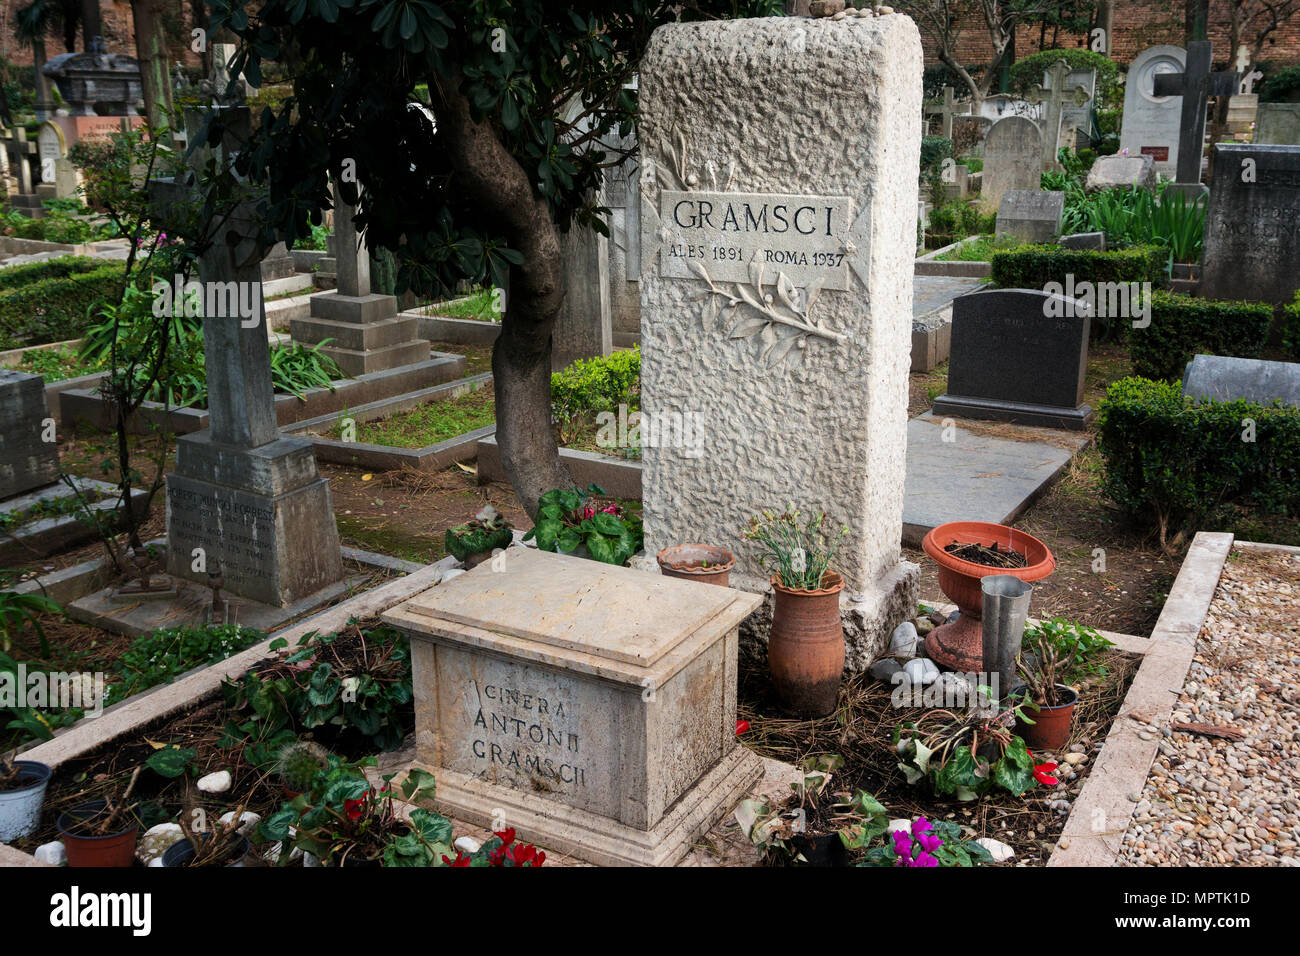 La tumba de Antonio Gramsci - Roma Foto de stock